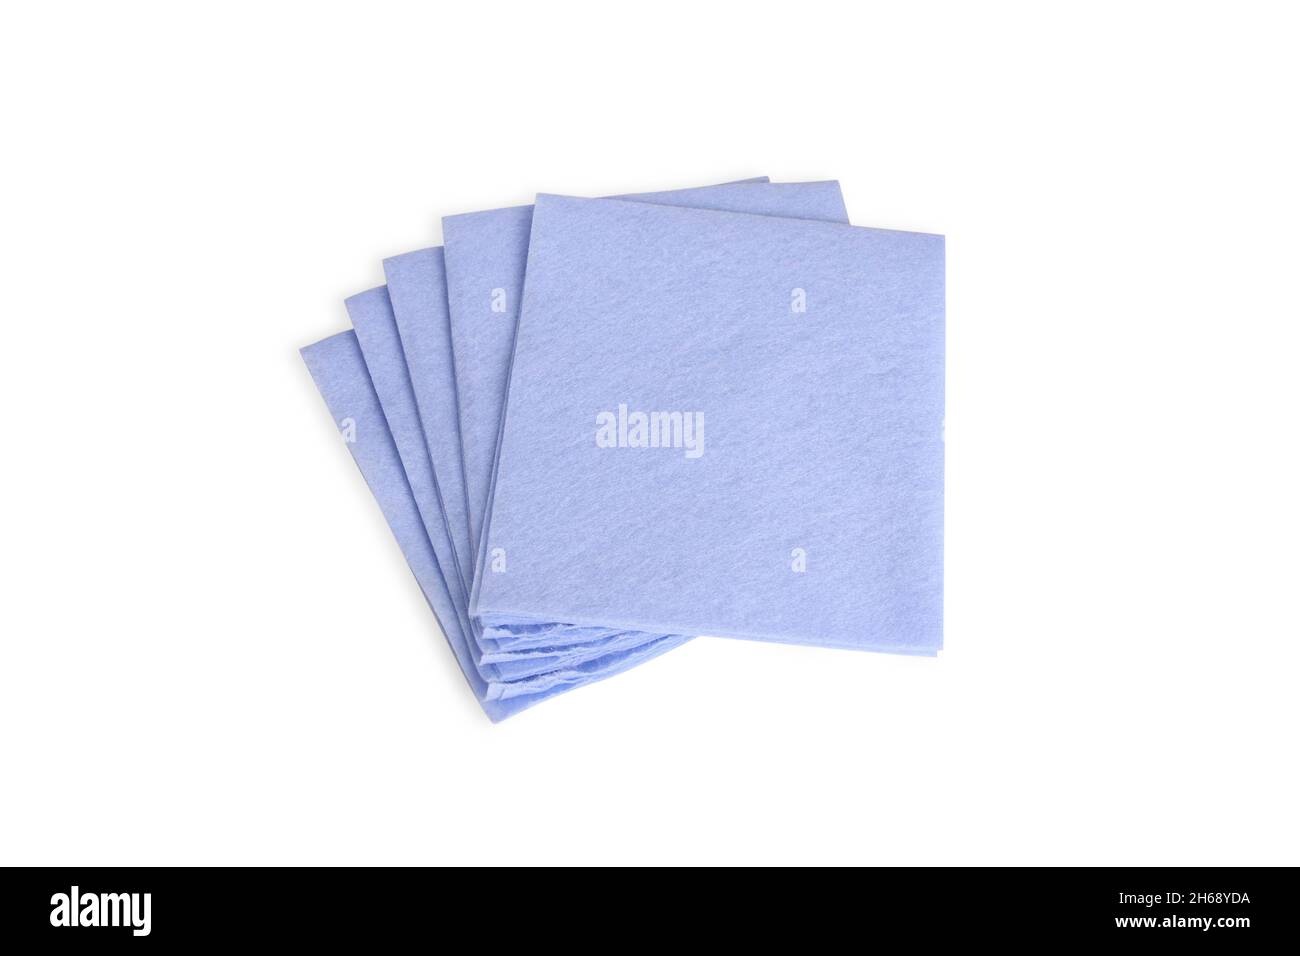 Blaue Servietten zum Reinigen des Tisches isoliert auf weißem Hintergrund. Gefaltete blaue Textilserviette. Mikrofaser-Reinigungstuch Draufsicht Stockfoto